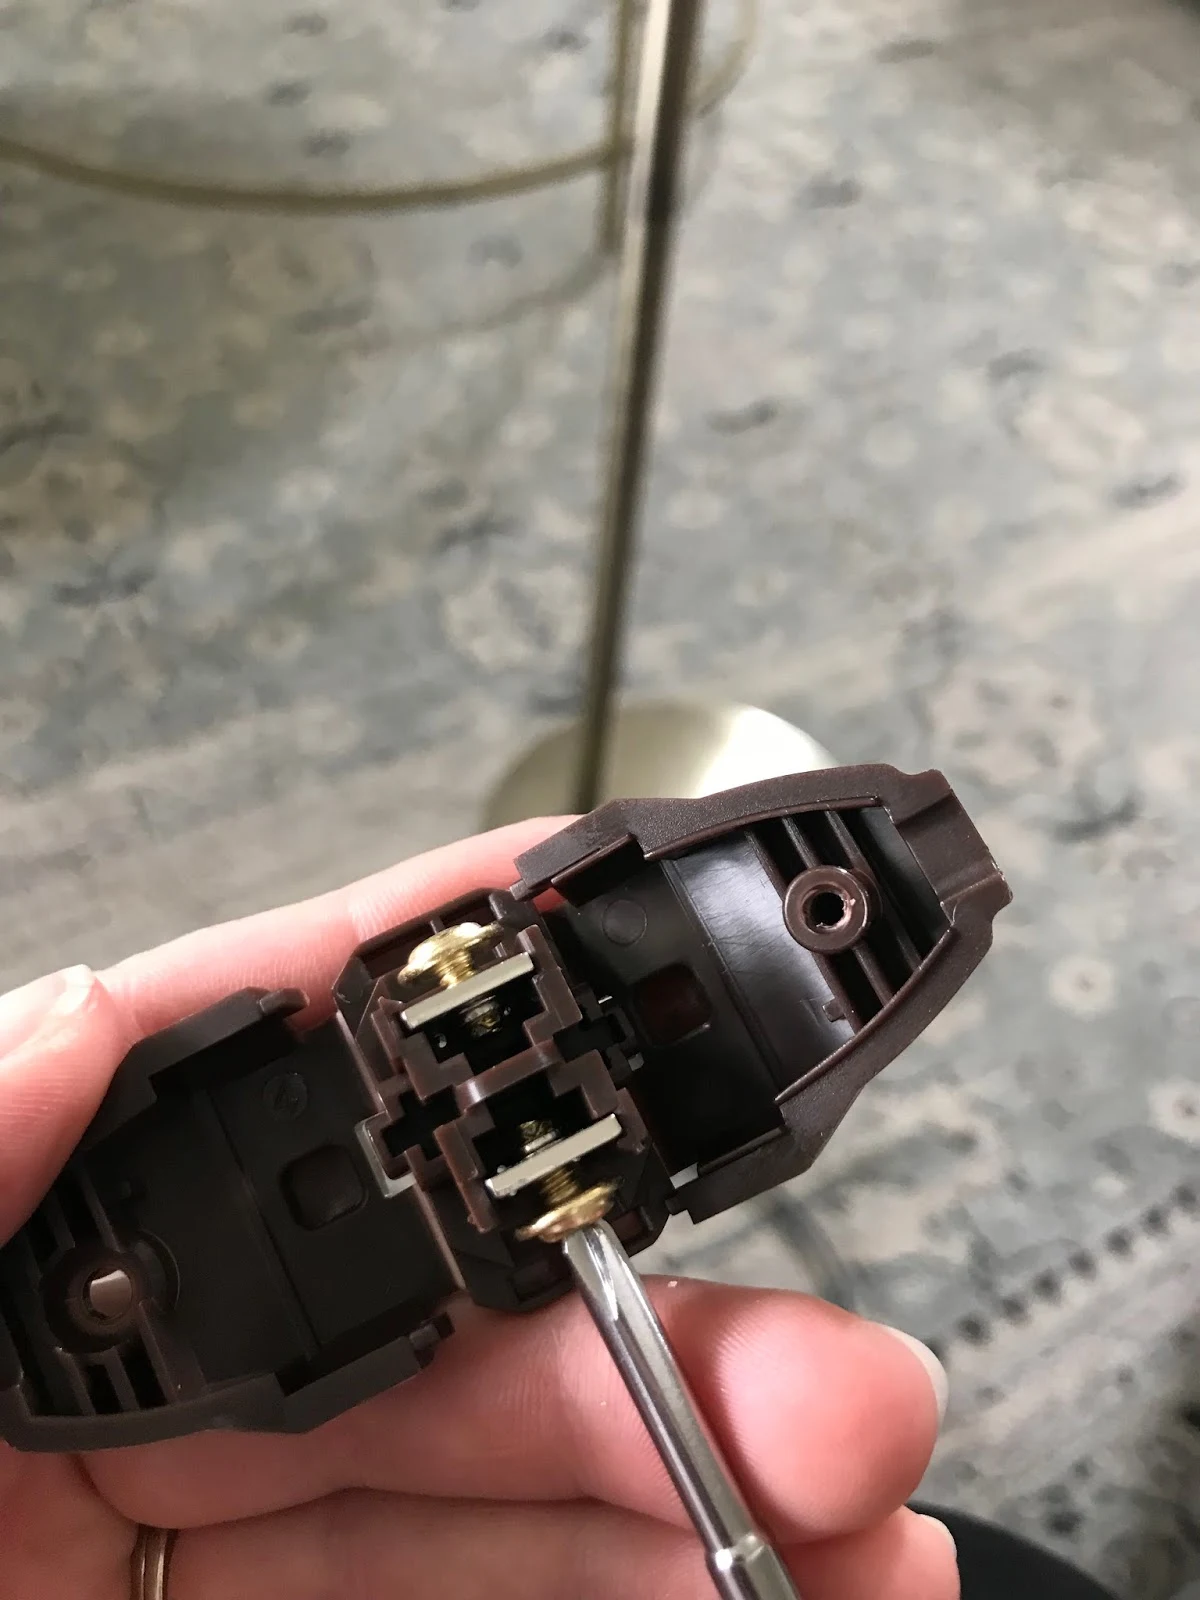 How to repair a broken lamp plug